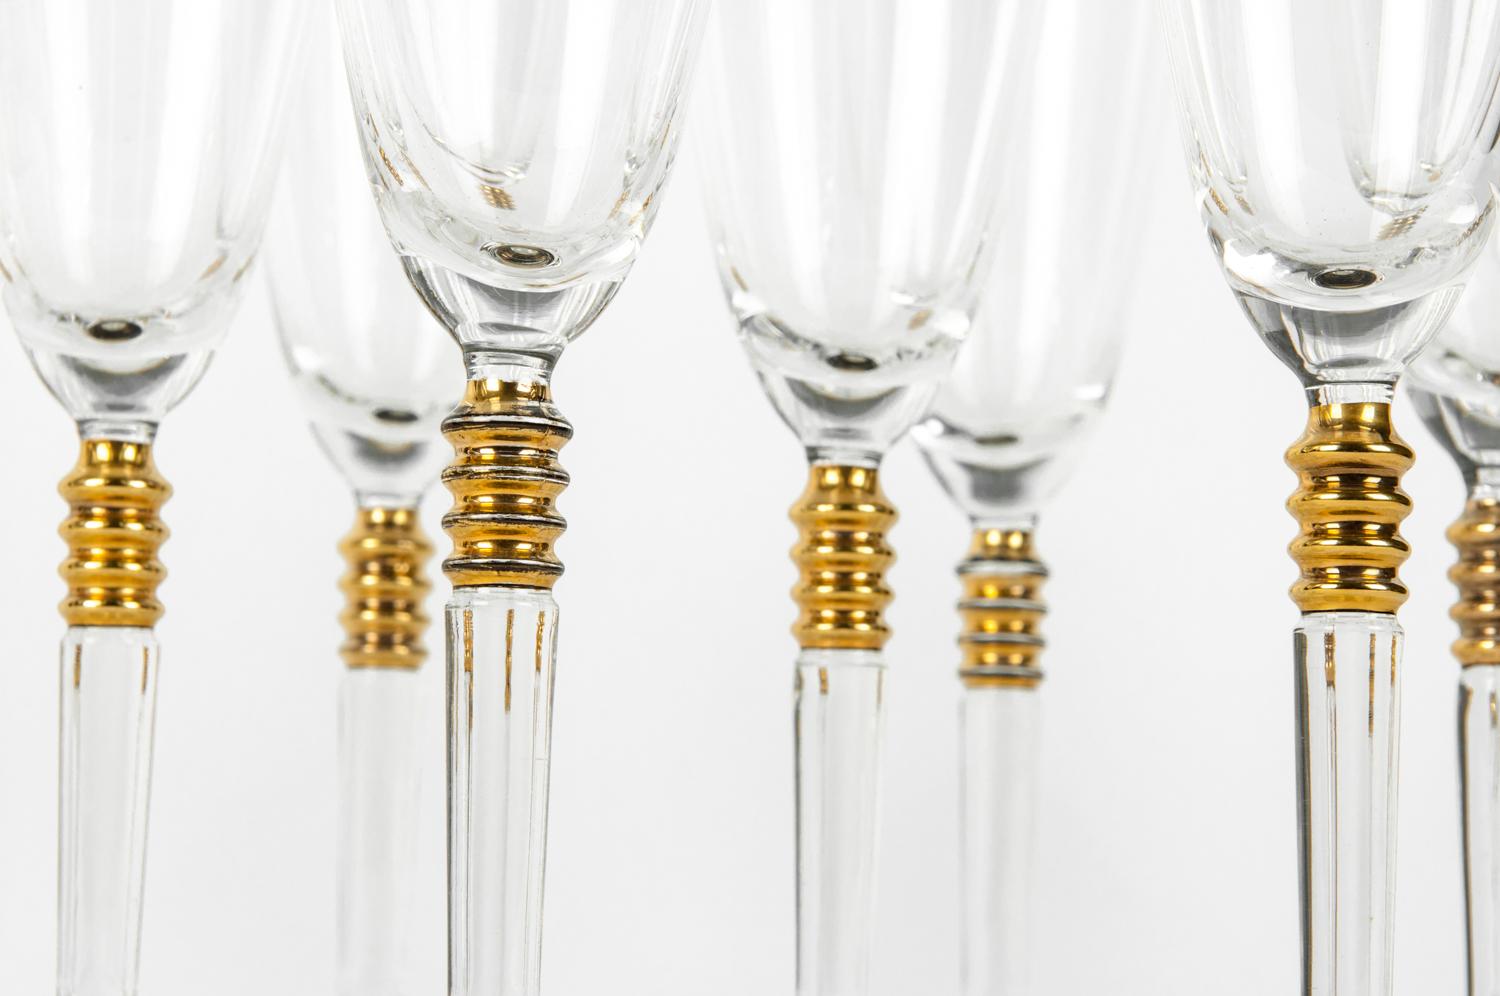 Vintage Crystal with Gold Design Champagne Flute Set of 12 1